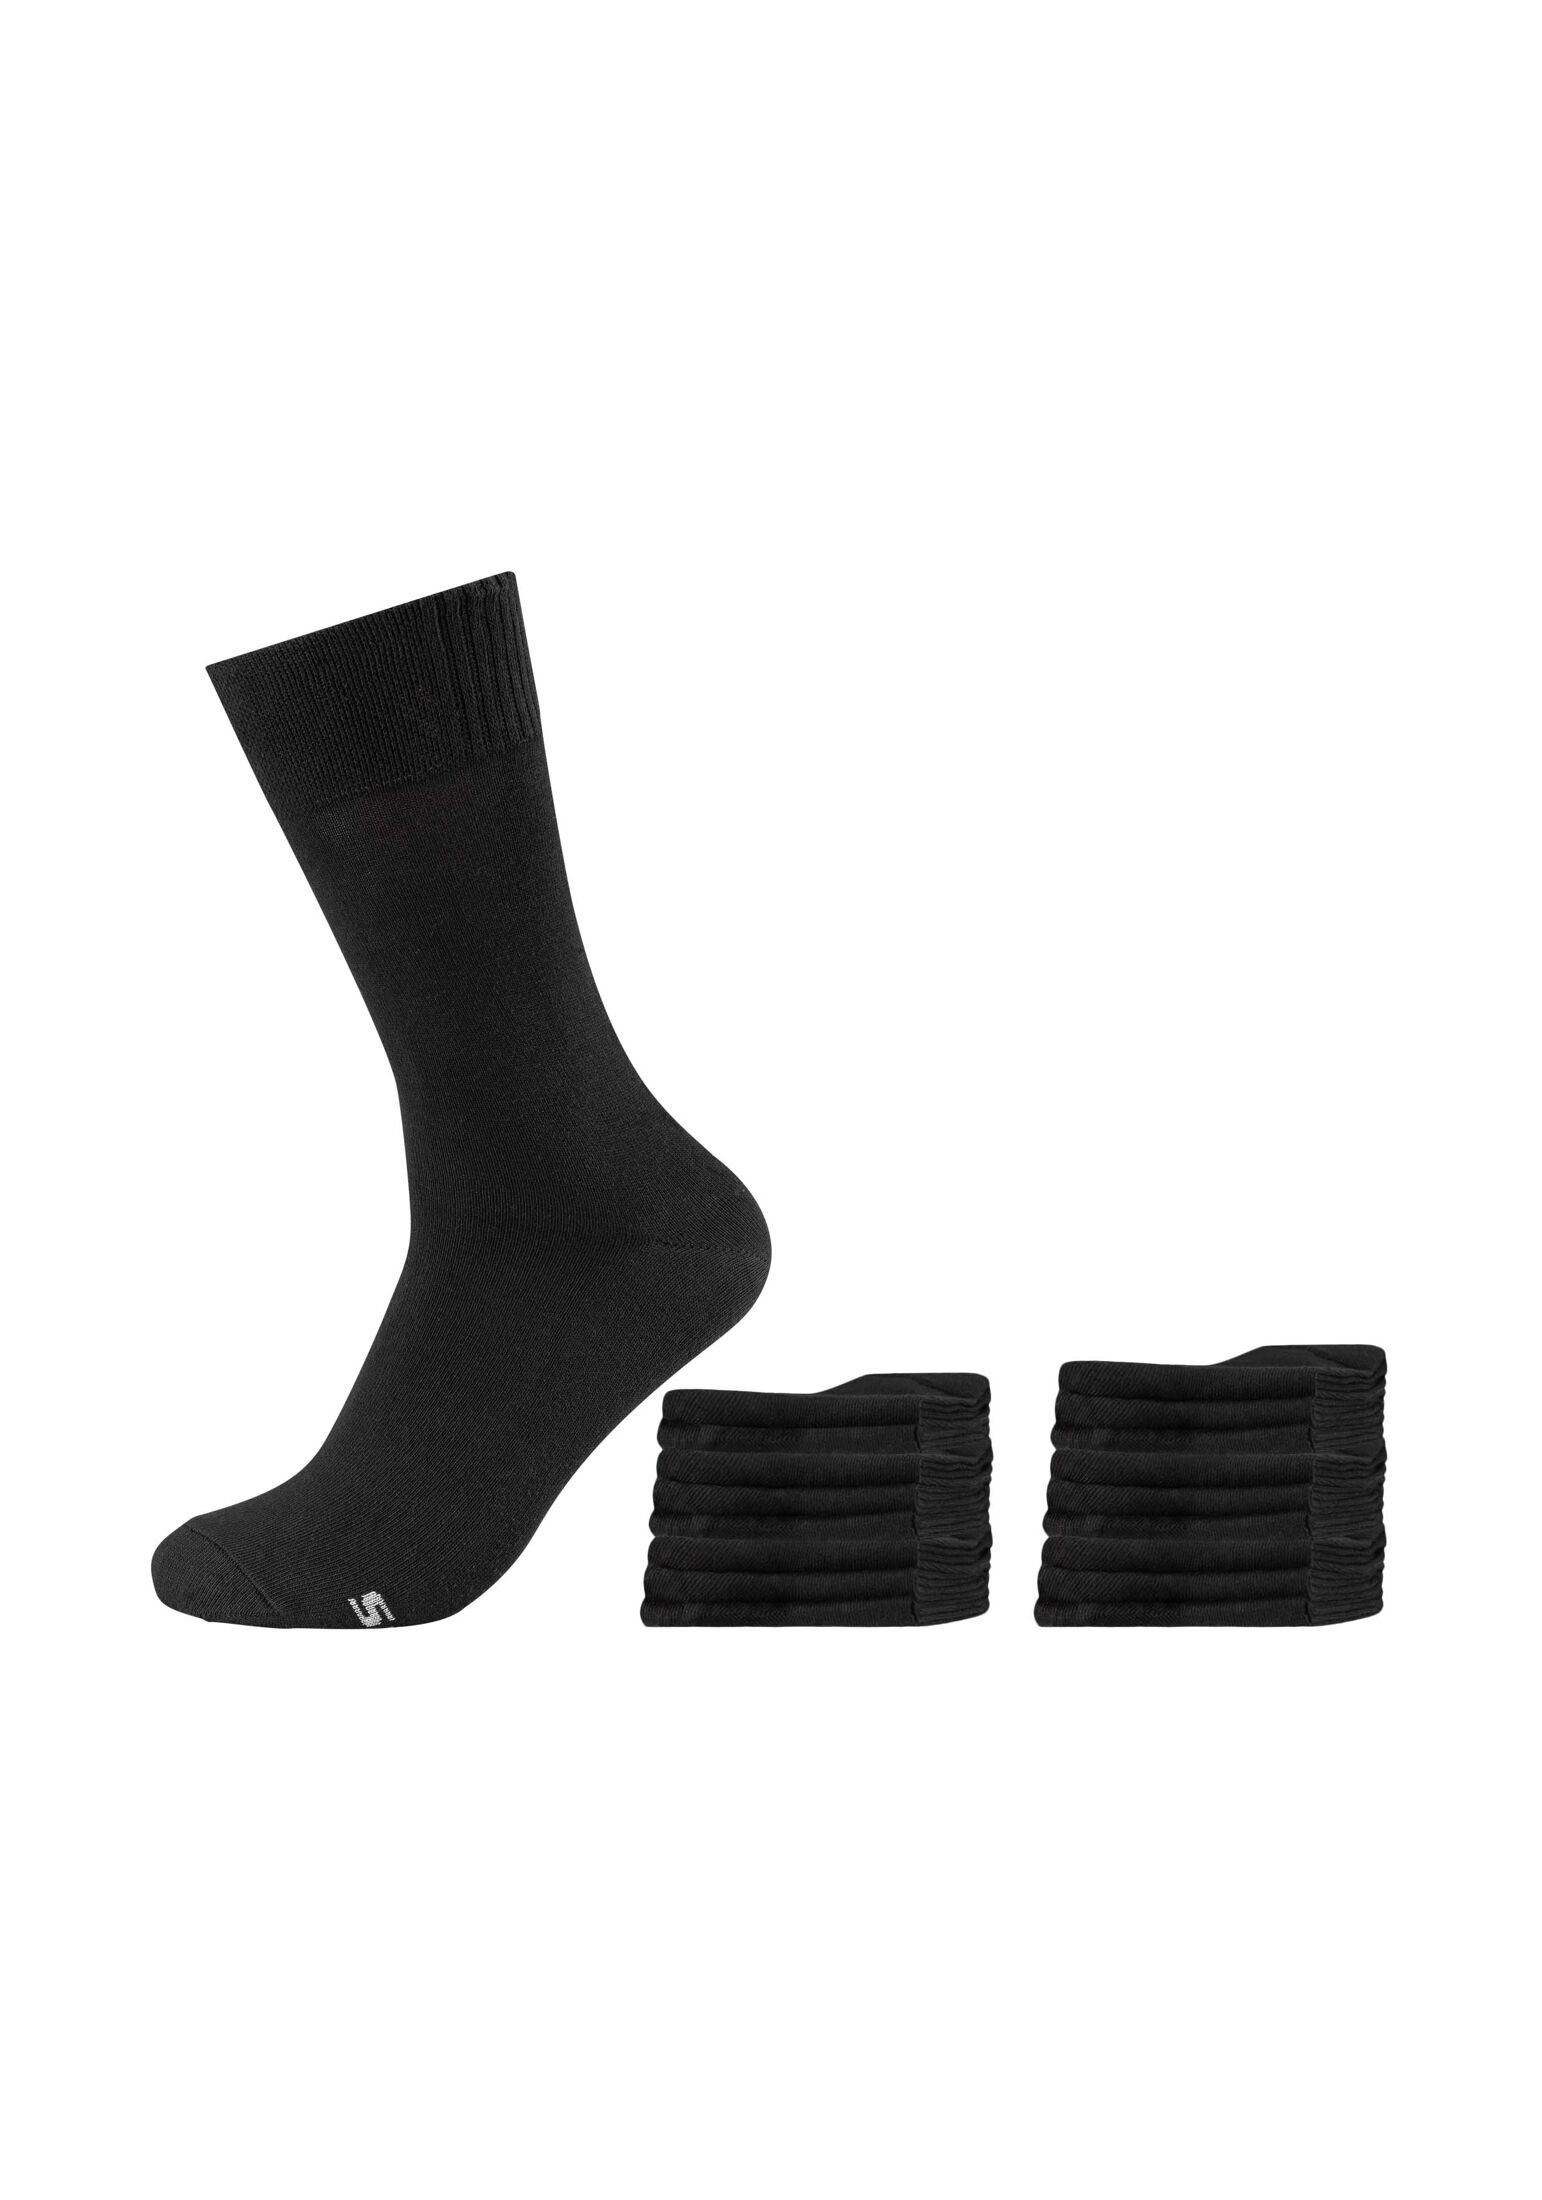 Skechers Socken Socken 18er Pack black | Socken